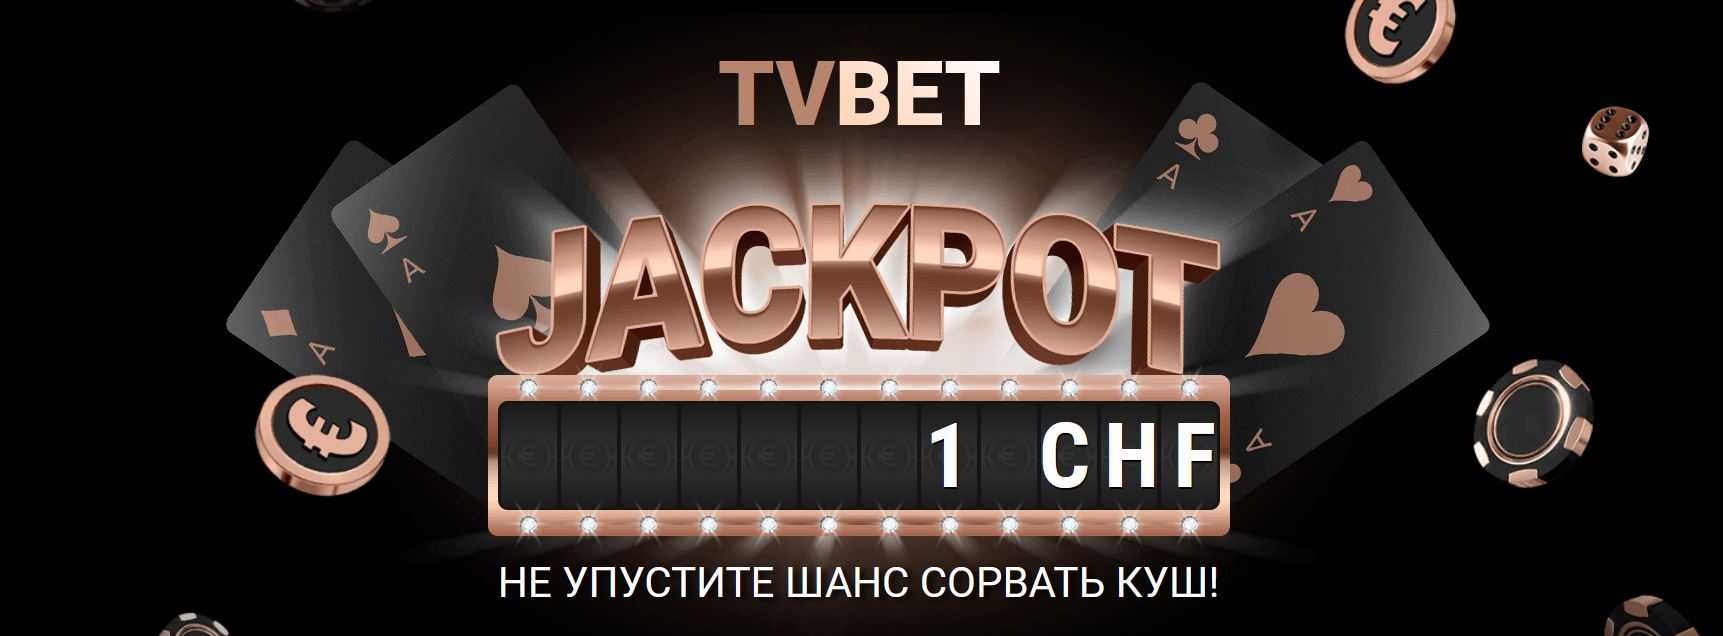 TV Bet Jackpot от букмекерской компании 1xBet